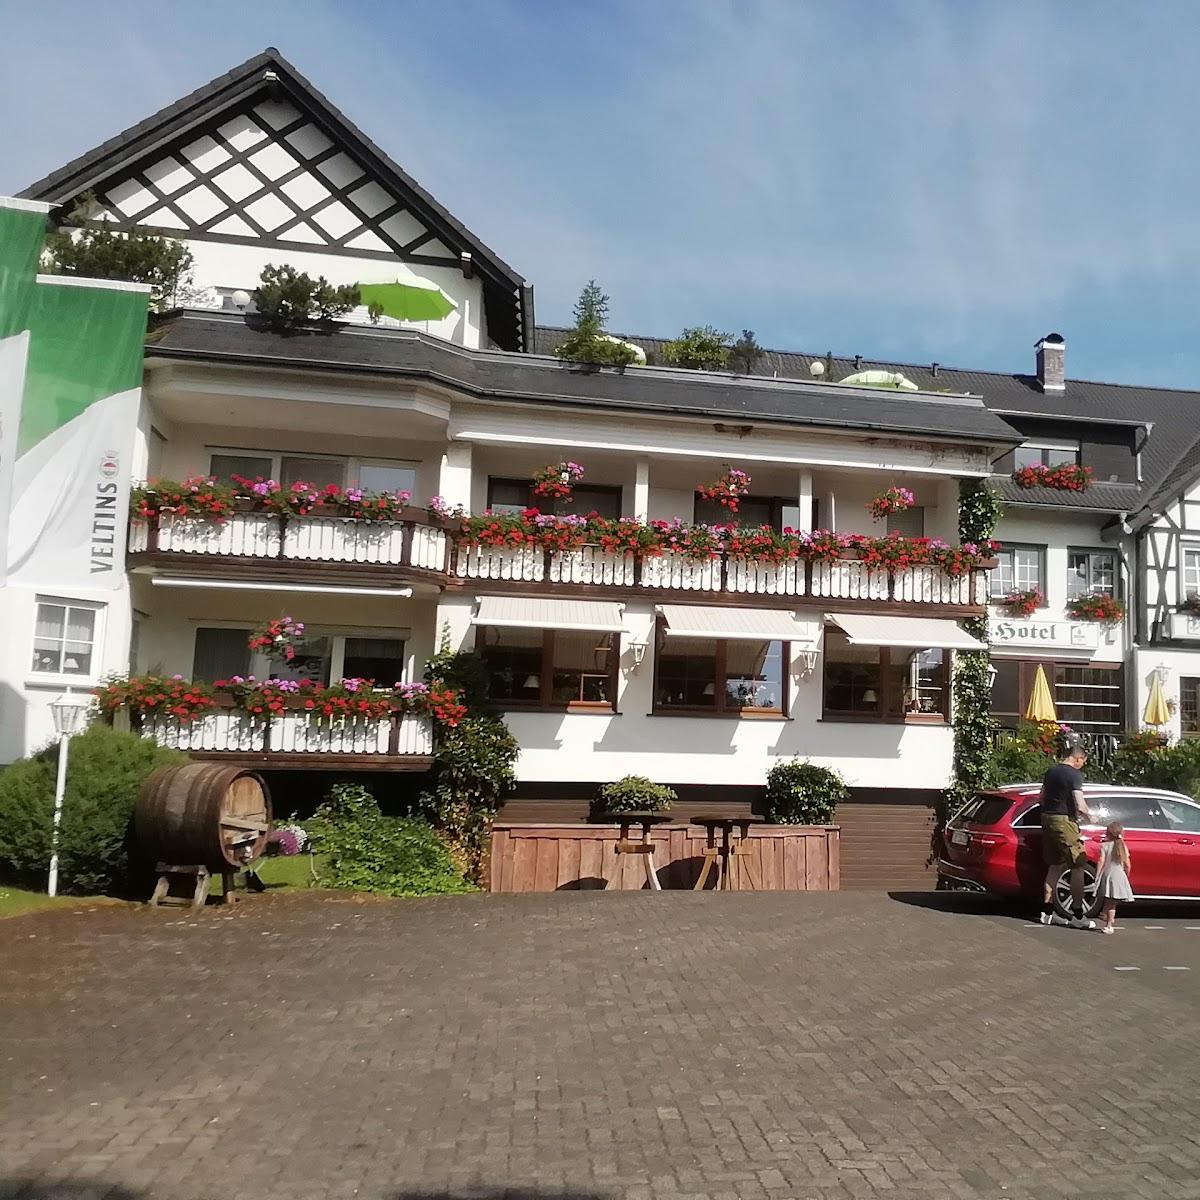 Restaurant "Woiler Hof oHG" in Eslohe (Sauerland)